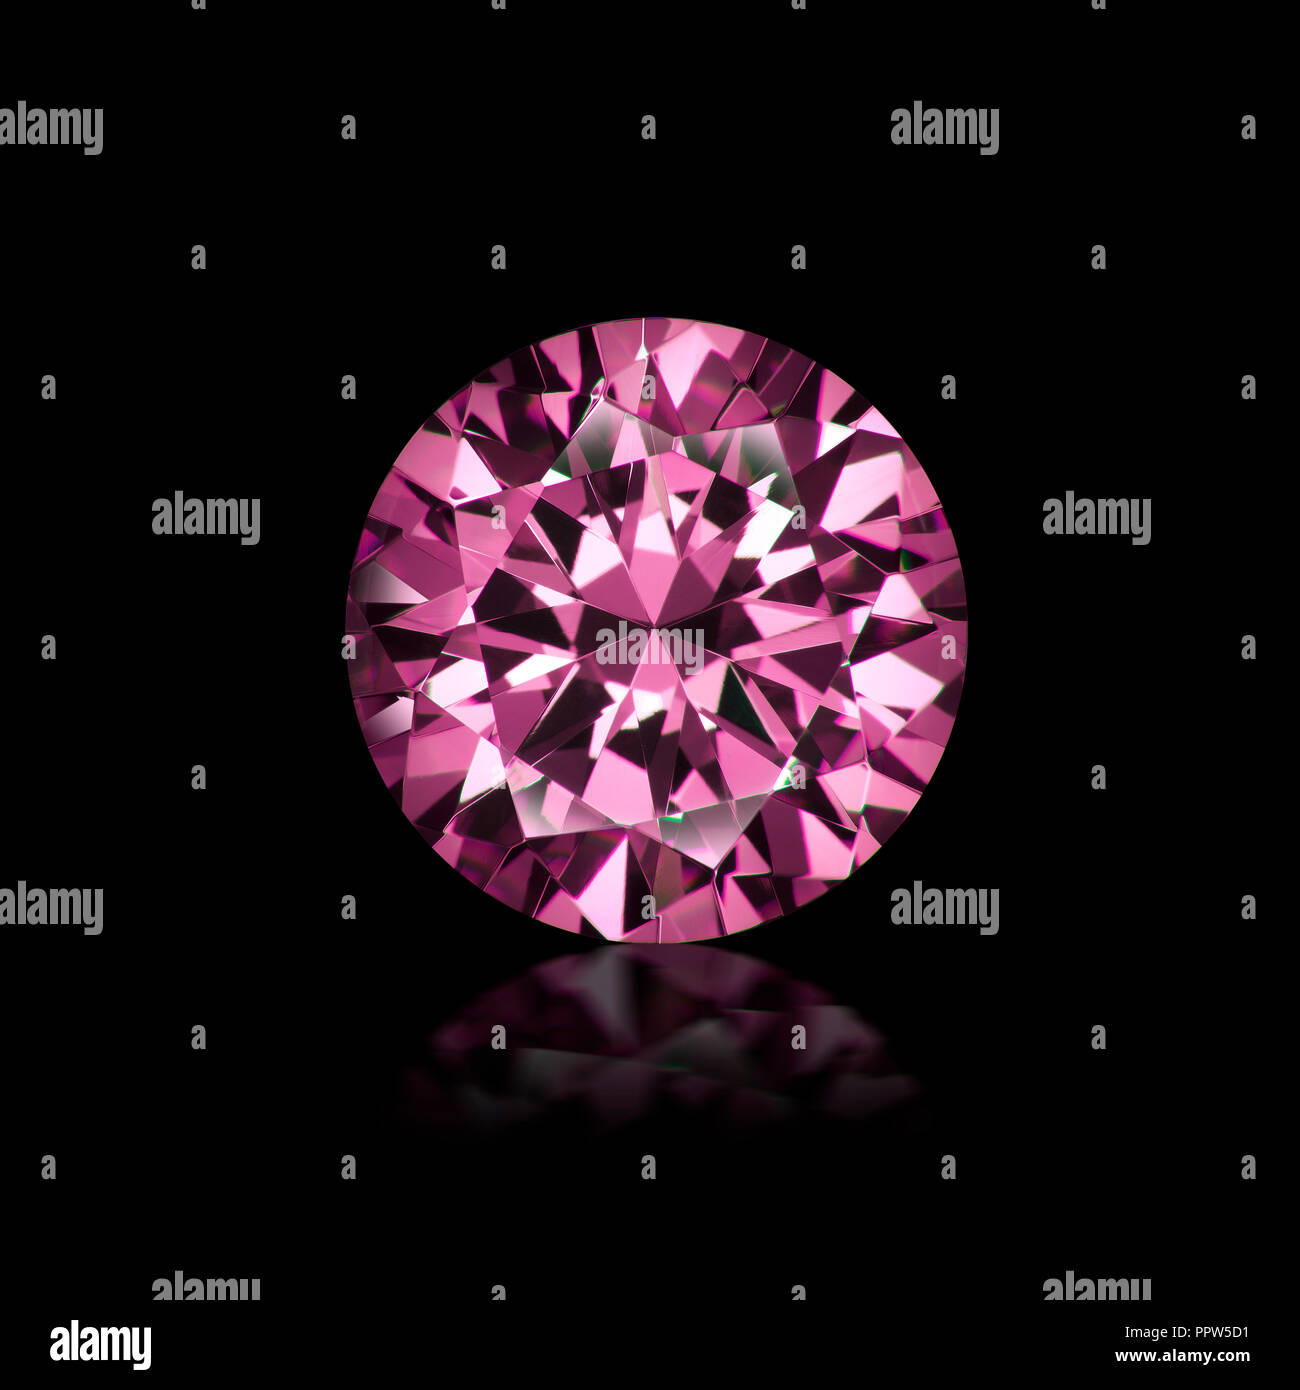 Coupe ronde brillant joyau de pierre gemme diamant rose Banque D'Images